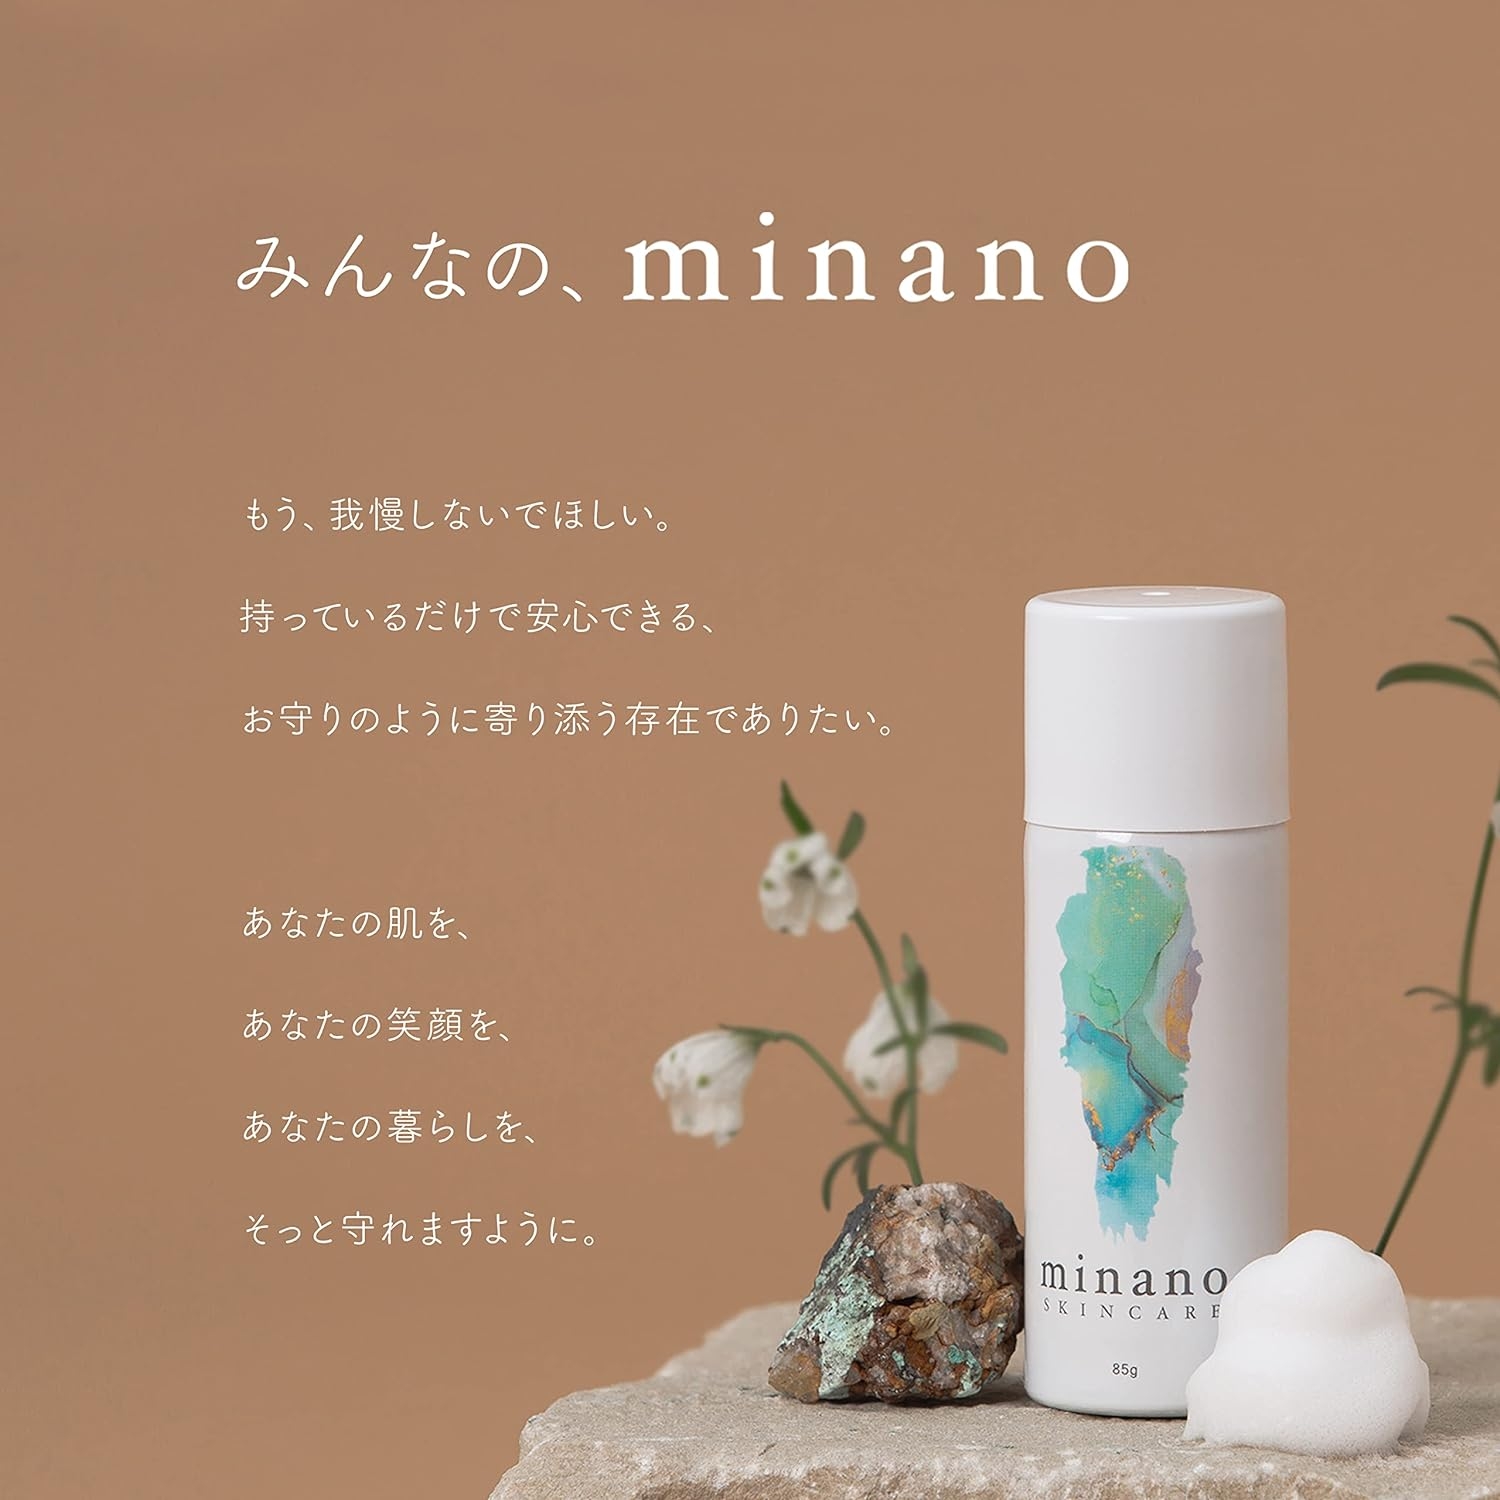 minano(ミナノ) minano SKINCAREの商品画像6 